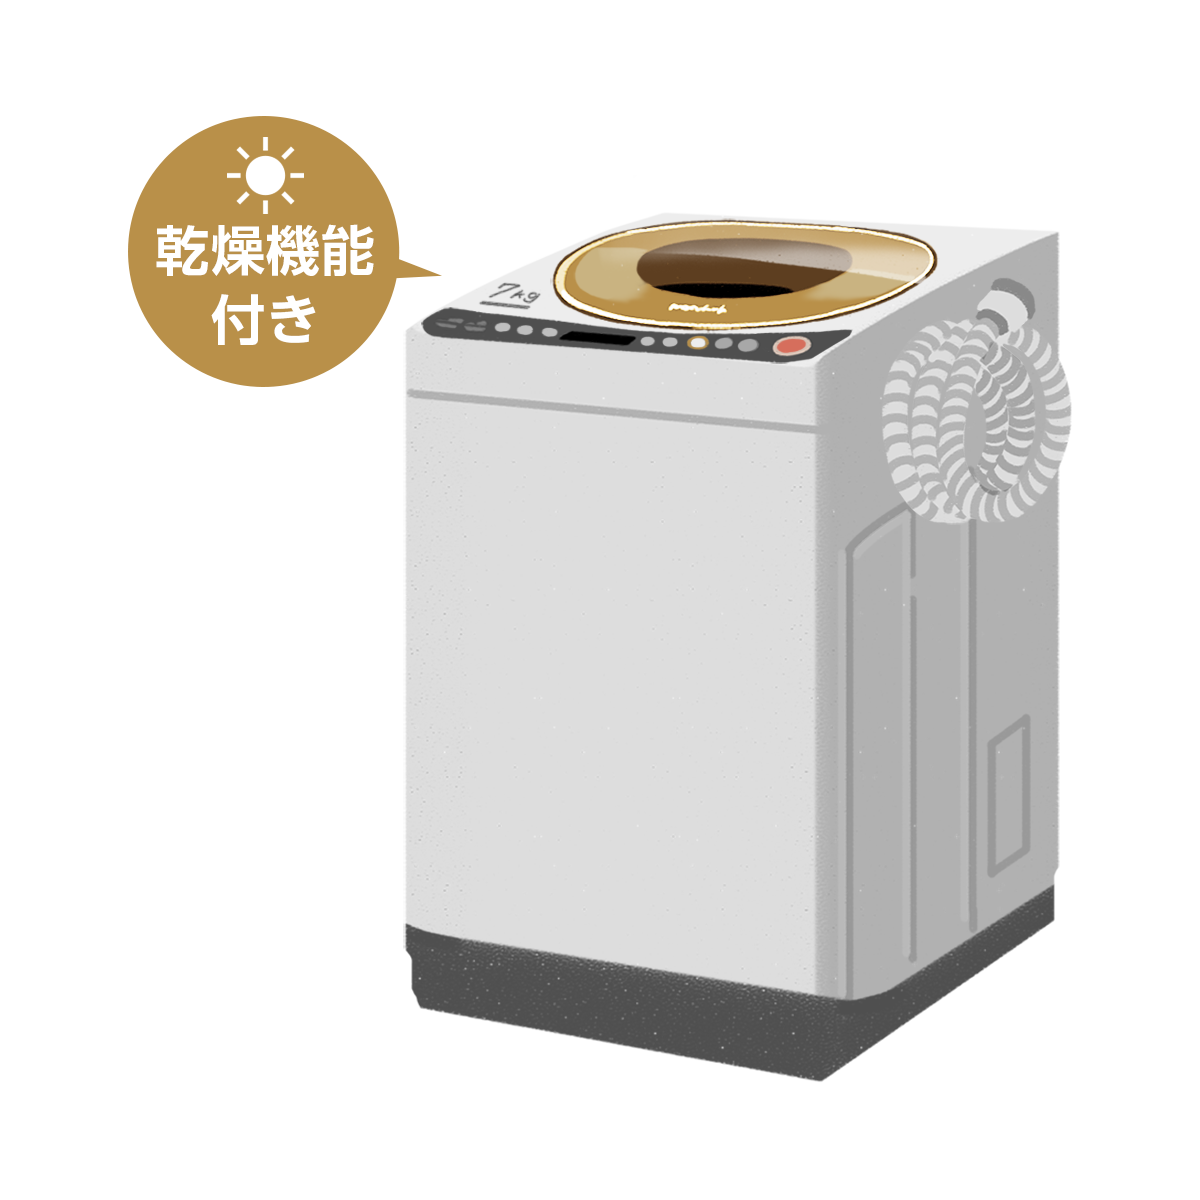 乾燥機能付きの洗濯機のイラスト エコのモト